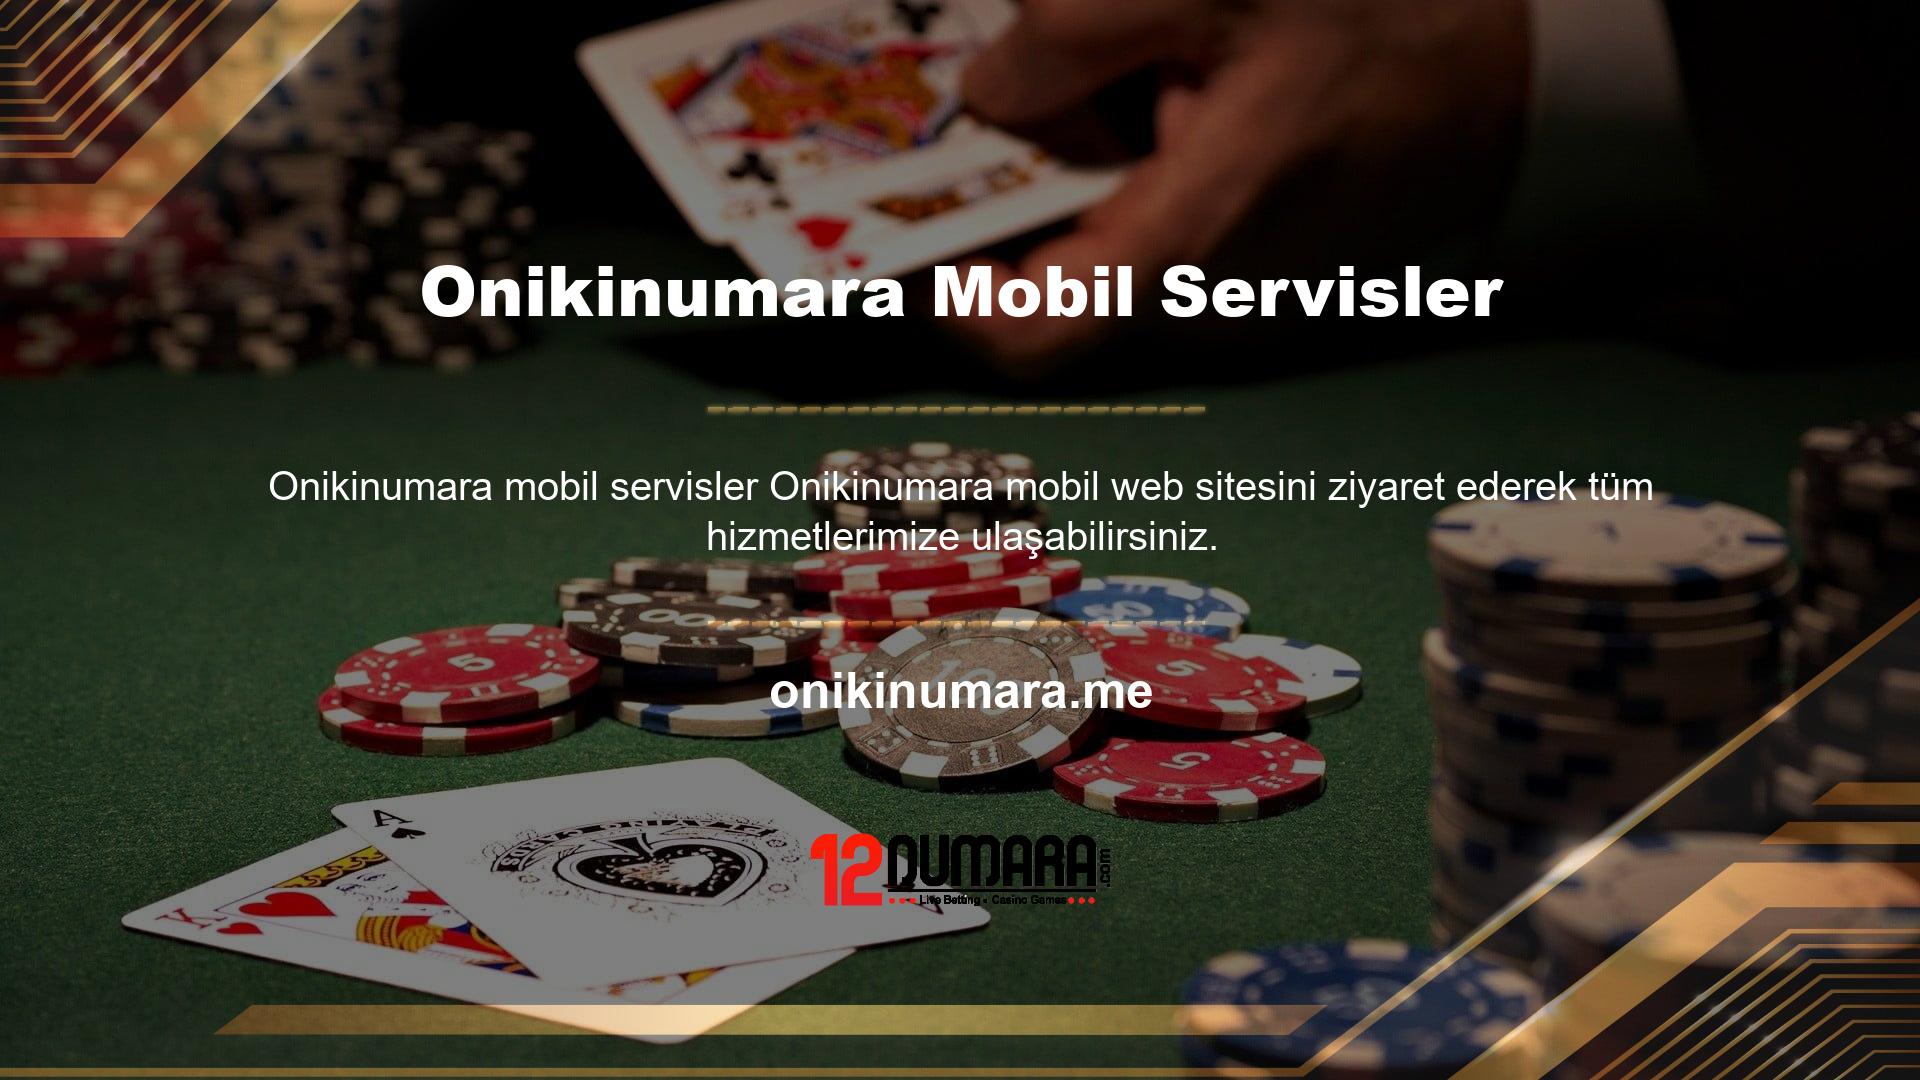 Onikinumara mobil servis bahis sitesi, bilgisayar üzerinden yapılabilecek tüm işlemleri kolaylıkla gerçekleştirmenize olanak sağlar